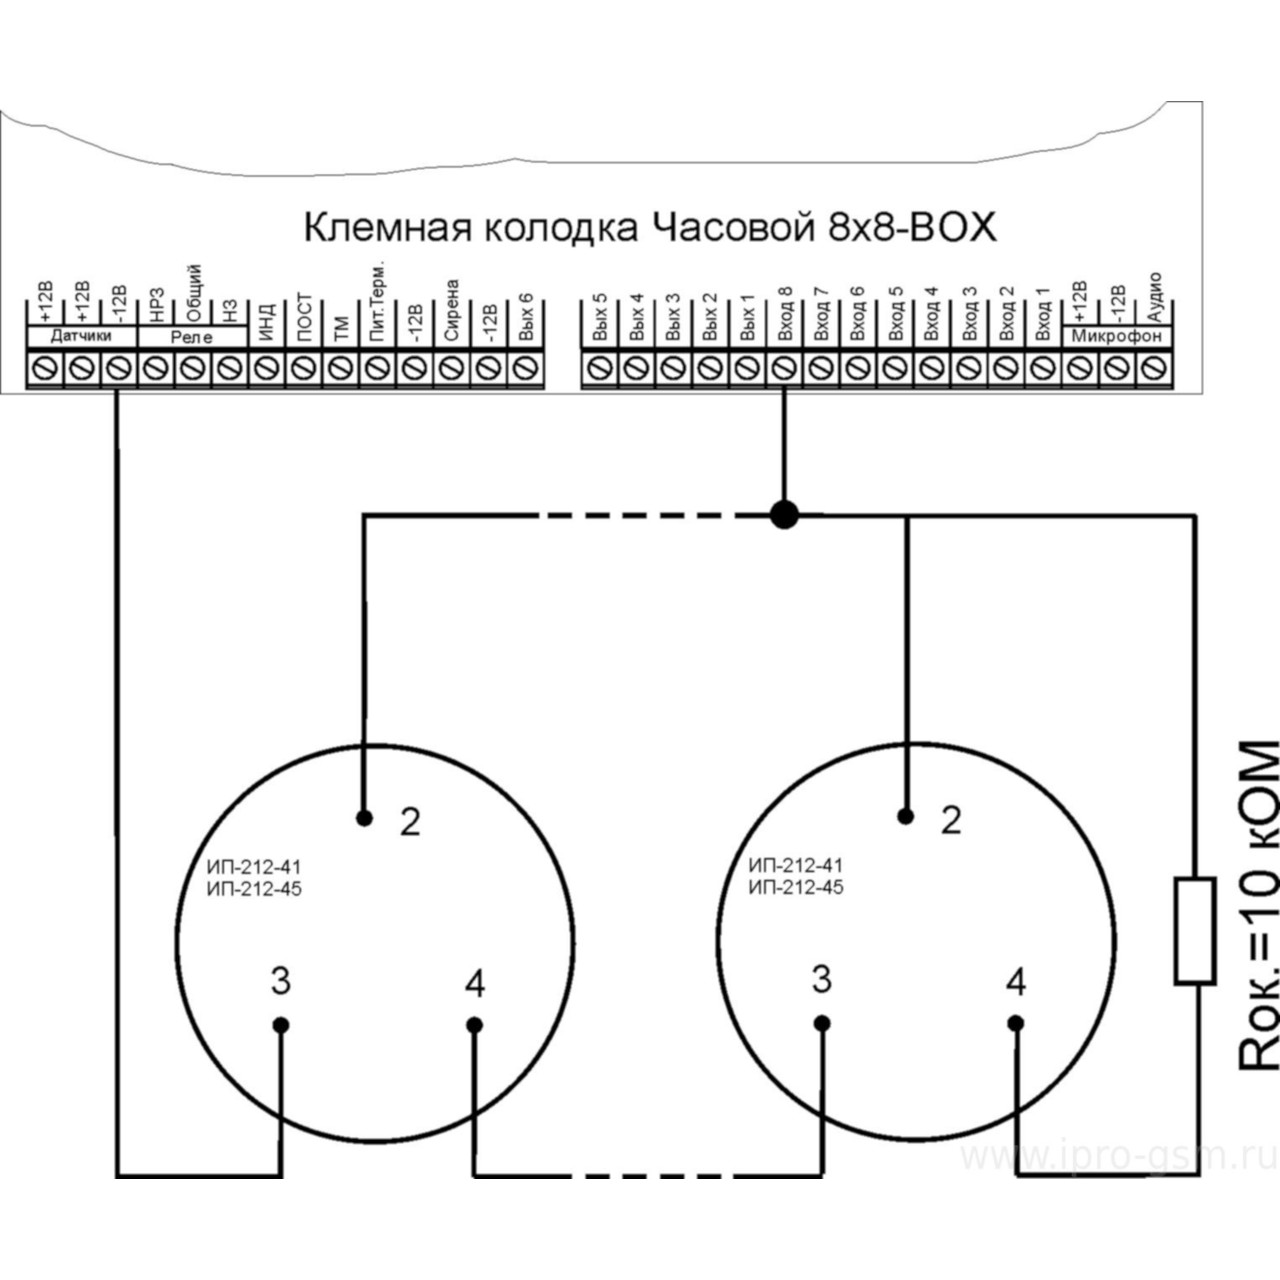 Схема подключения двухпроводных пожарных извещателей с оконечным резистором к GSM-сигнализации Часовой 8х8 RF BOX